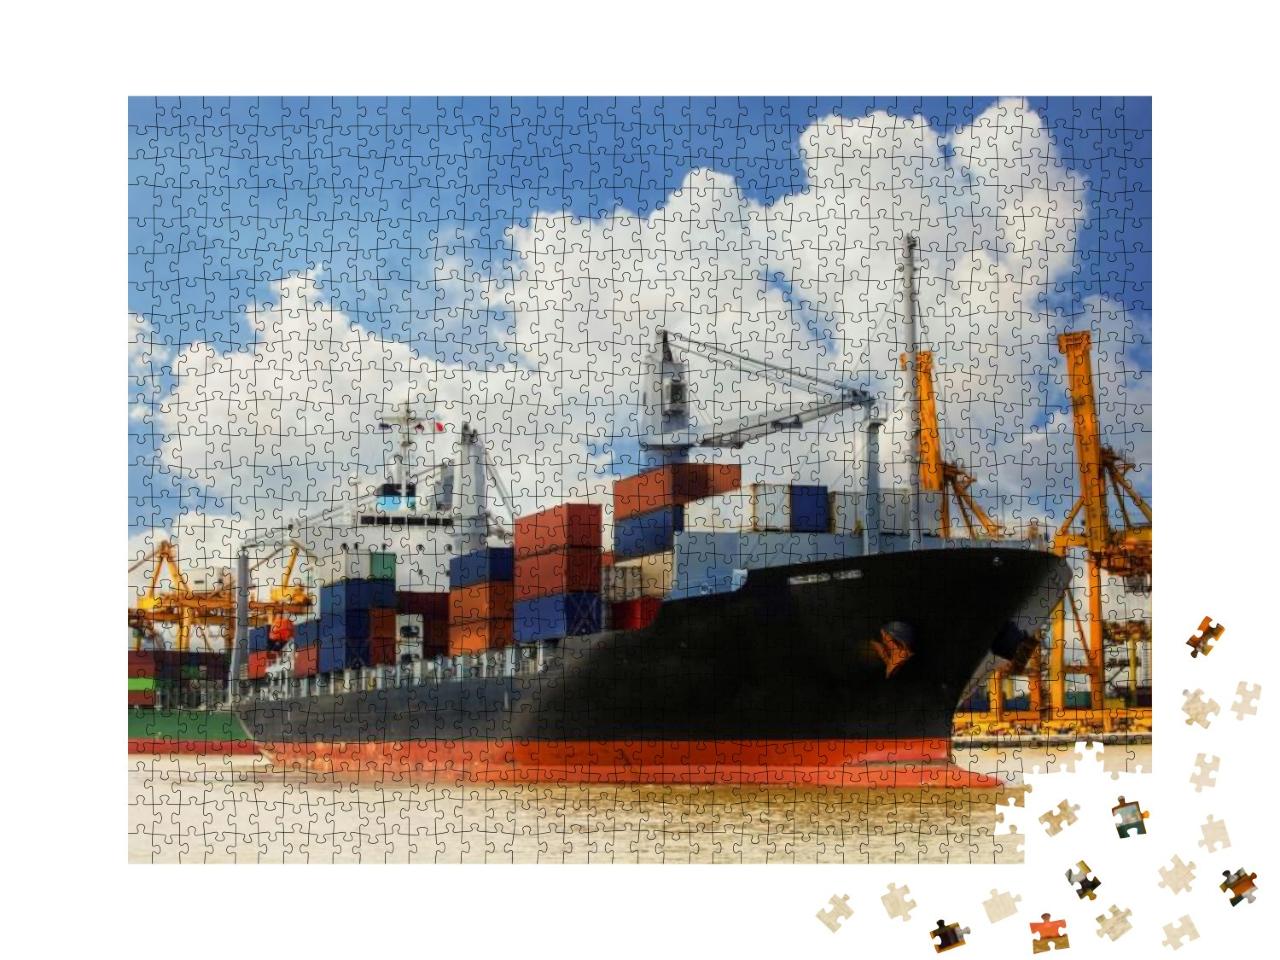 Puzzle 1000 Teile „Schifffahrtshafen in Thailand“